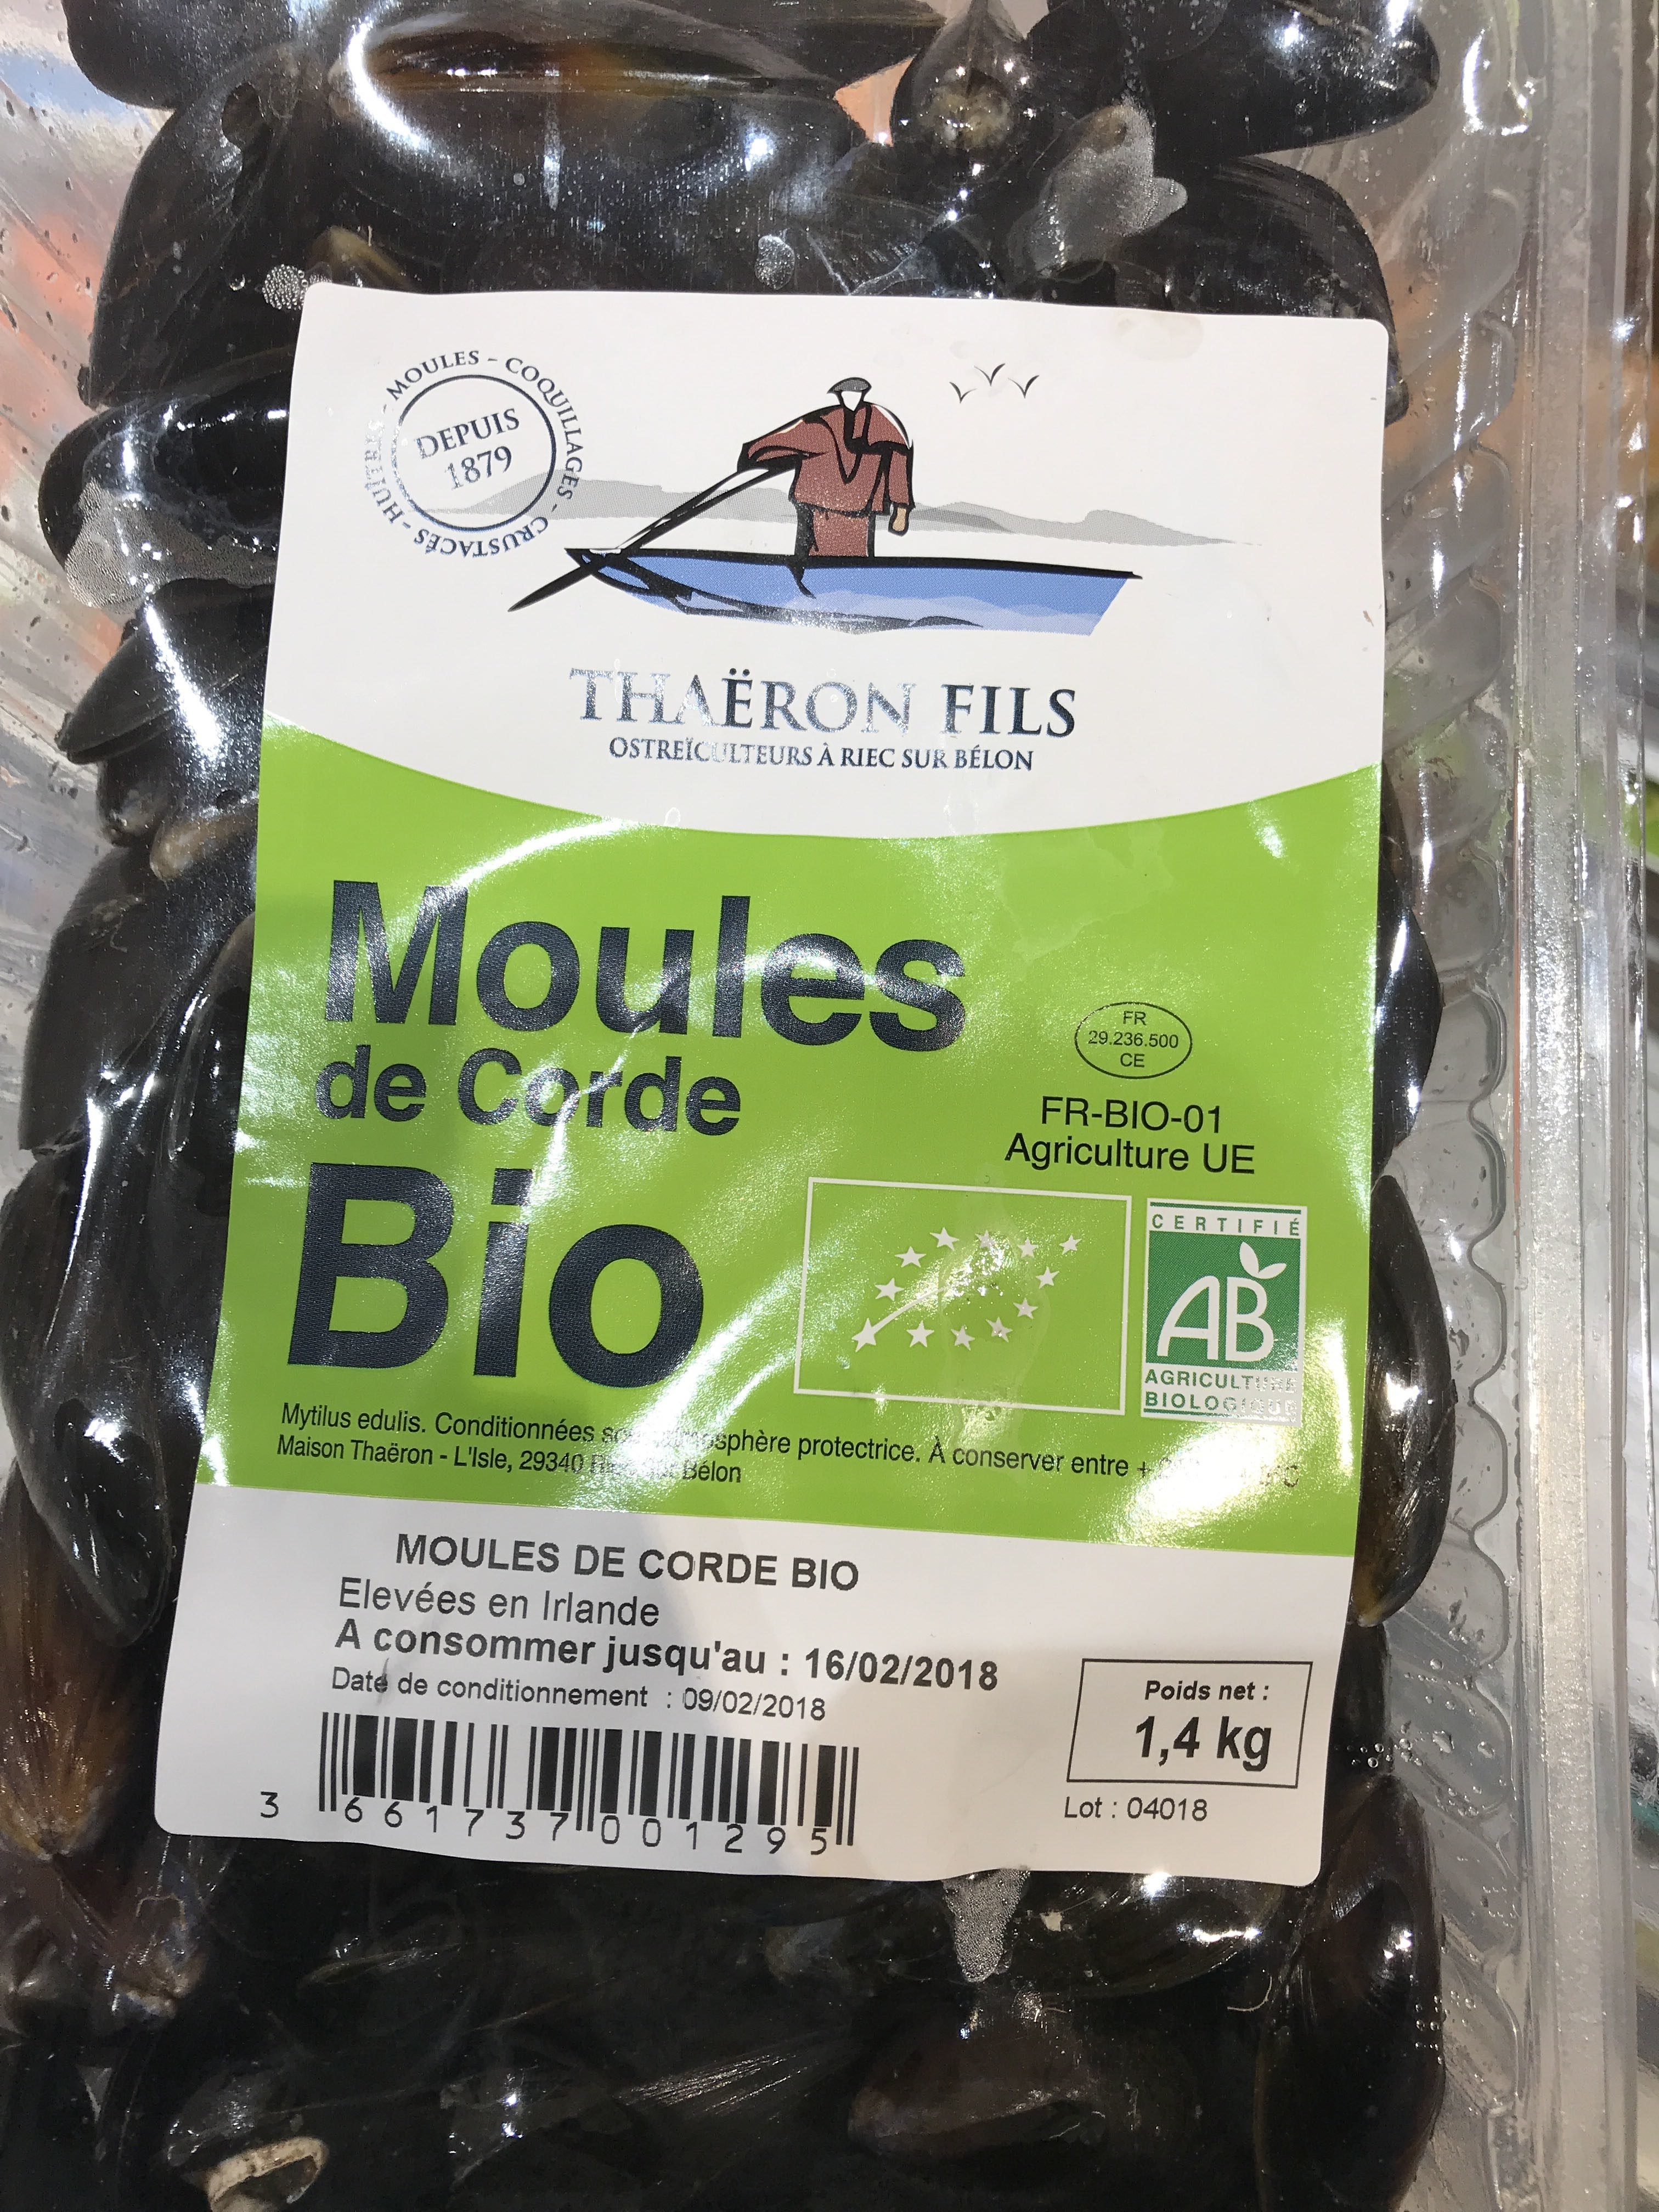 Moules de corde bio - Product - fr